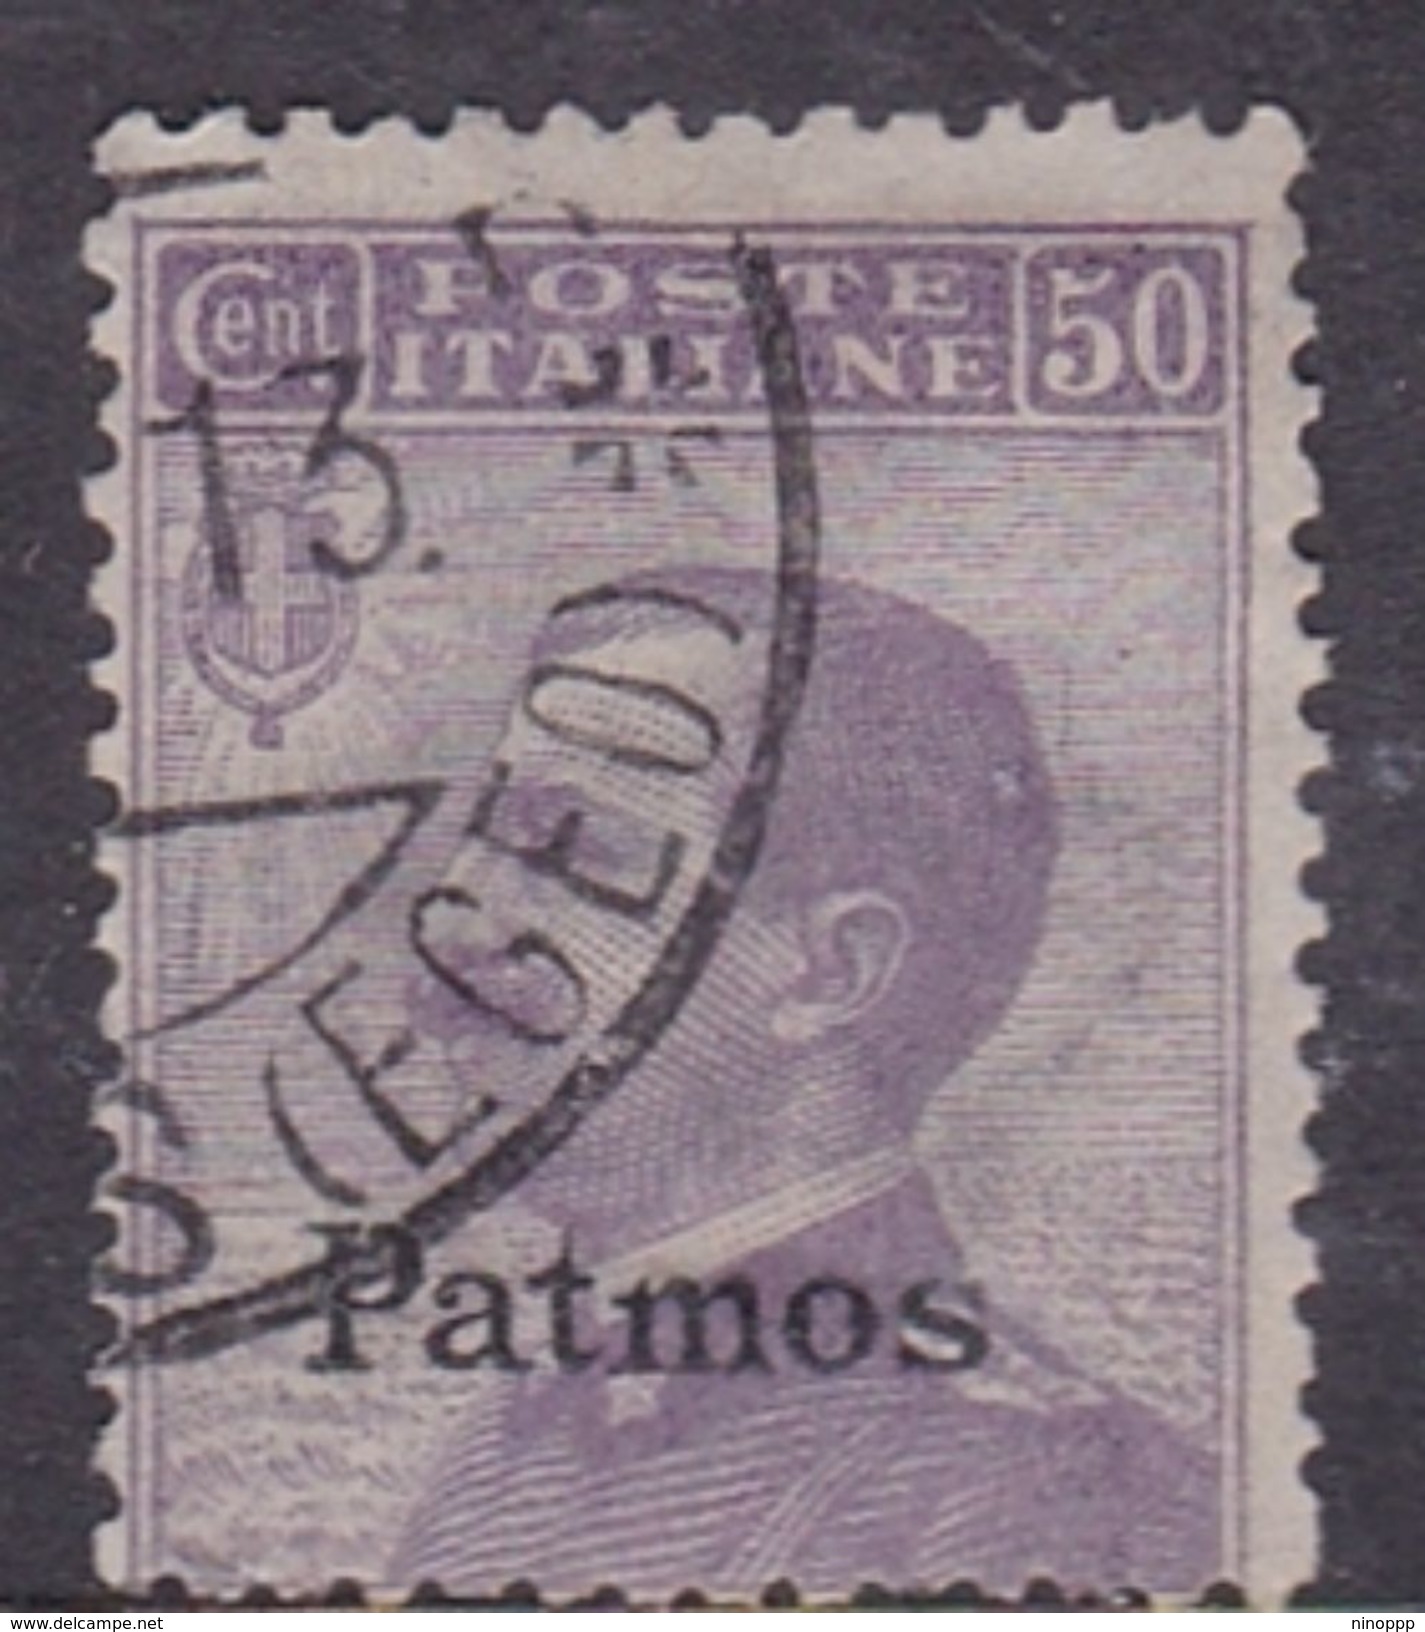 Italy-Colonies And Territories-Aegean-Patmo S 7  1912  50c Violet Used - Aegean (Patmo)